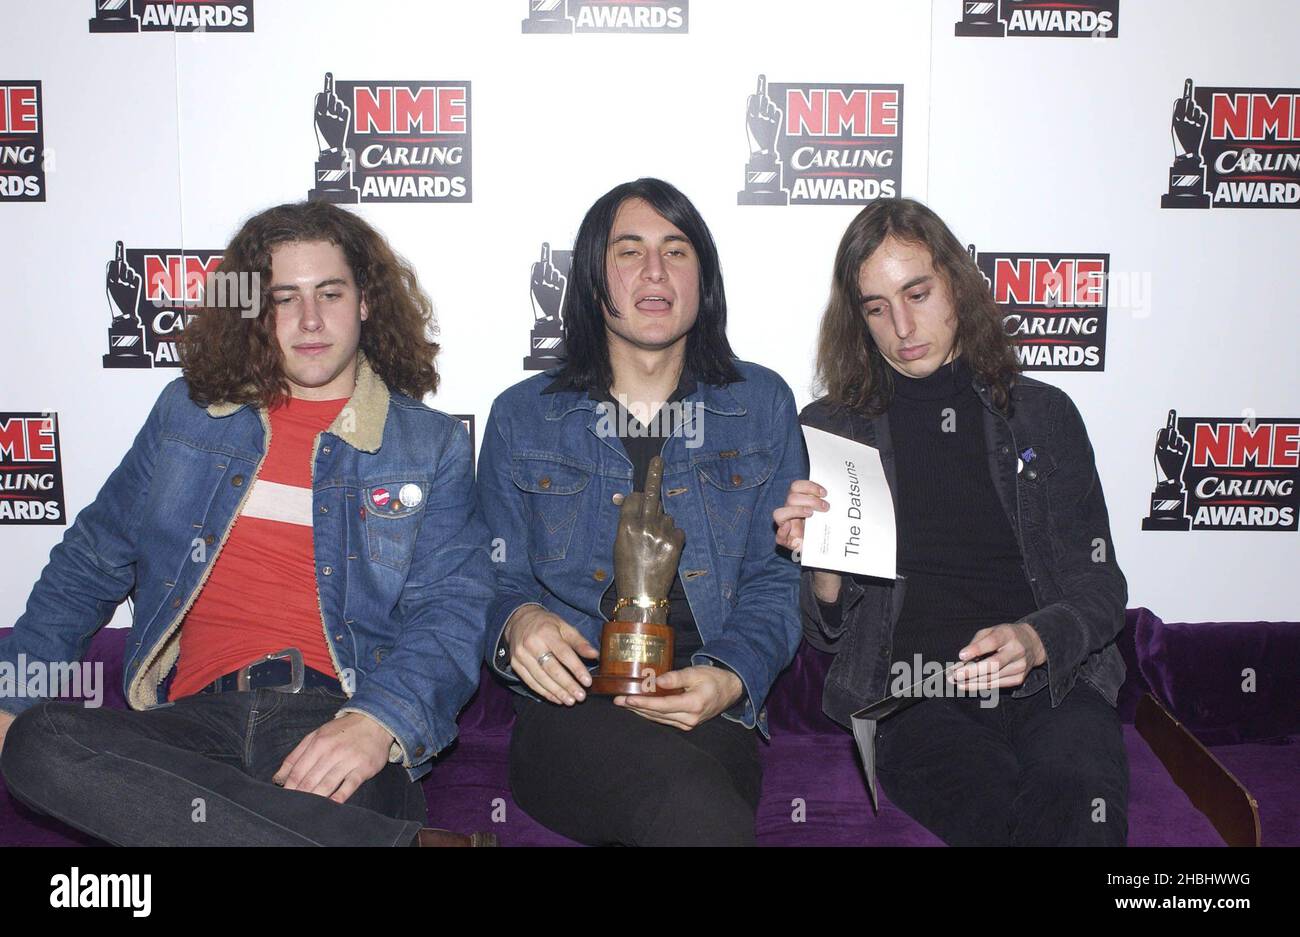 Die Datsuns fotografiert bei den NME Carling Awards im PoNaNa in London. 3/4 Länge. Stockfoto